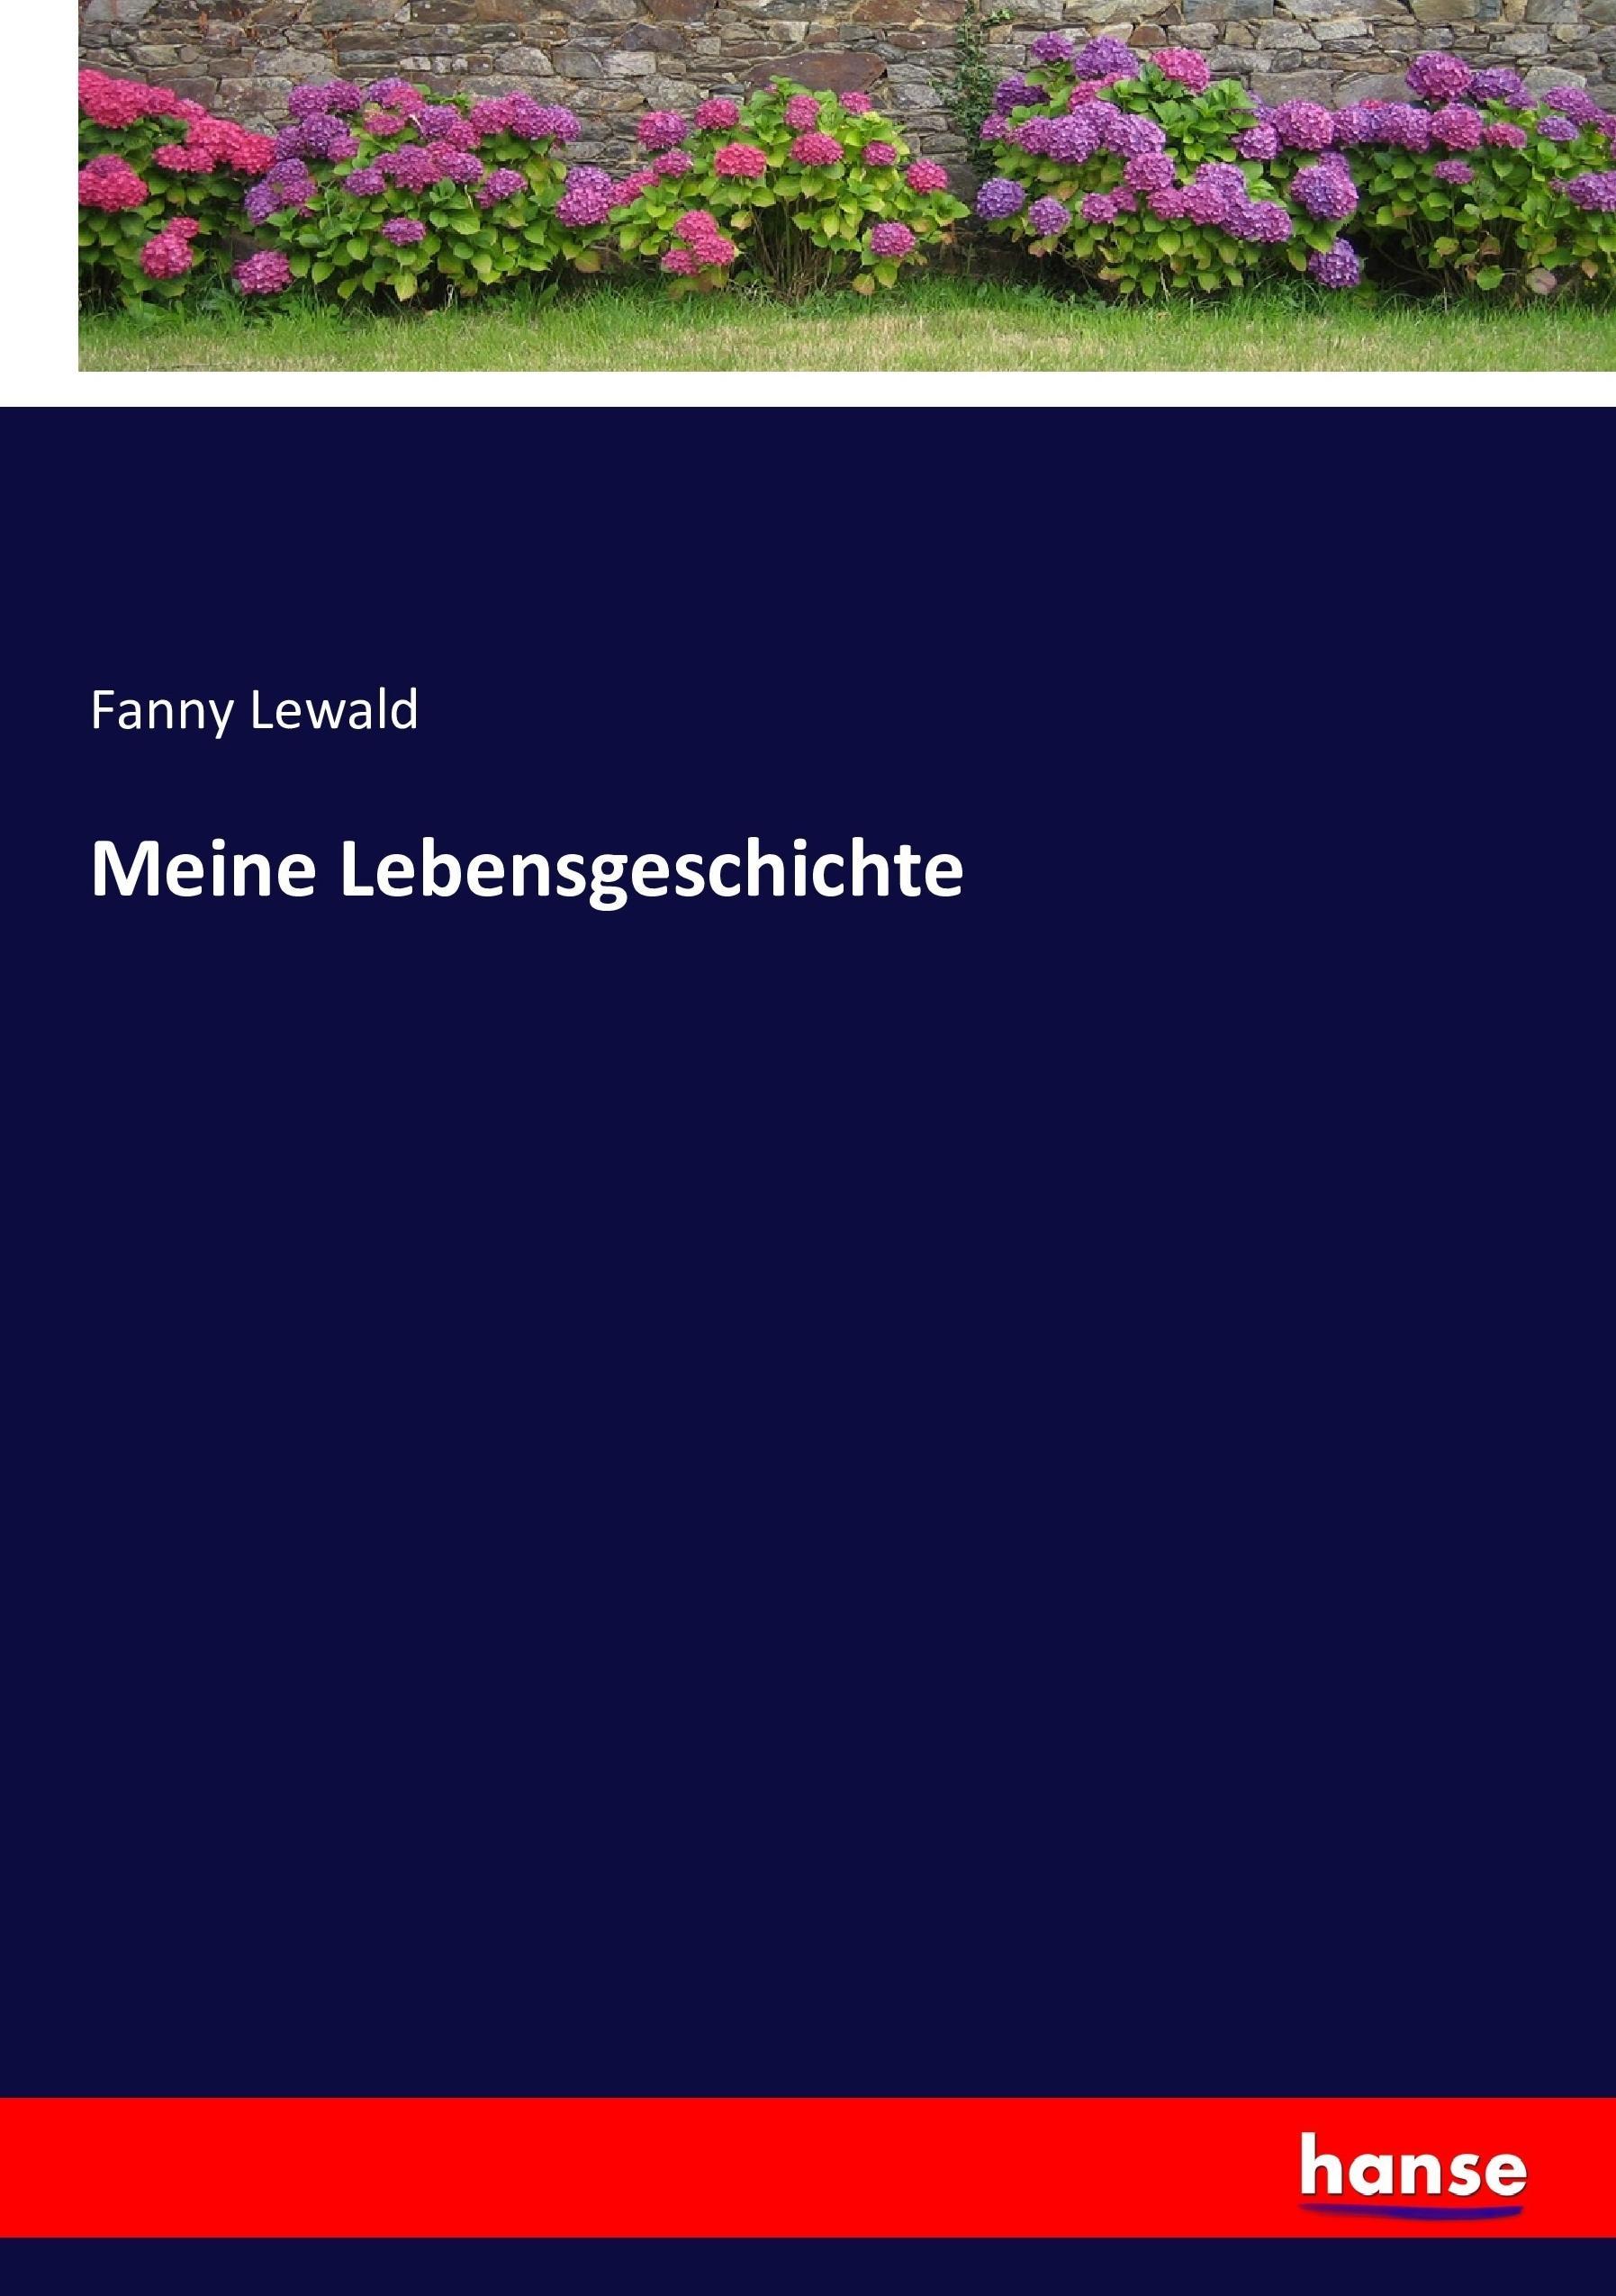 Meine Lebensgeschichte / Fanny Lewald / Taschenbuch / Paperback / 280 S. / Deutsch / 2017 / hansebooks / EAN 9783743616998 - Lewald, Fanny